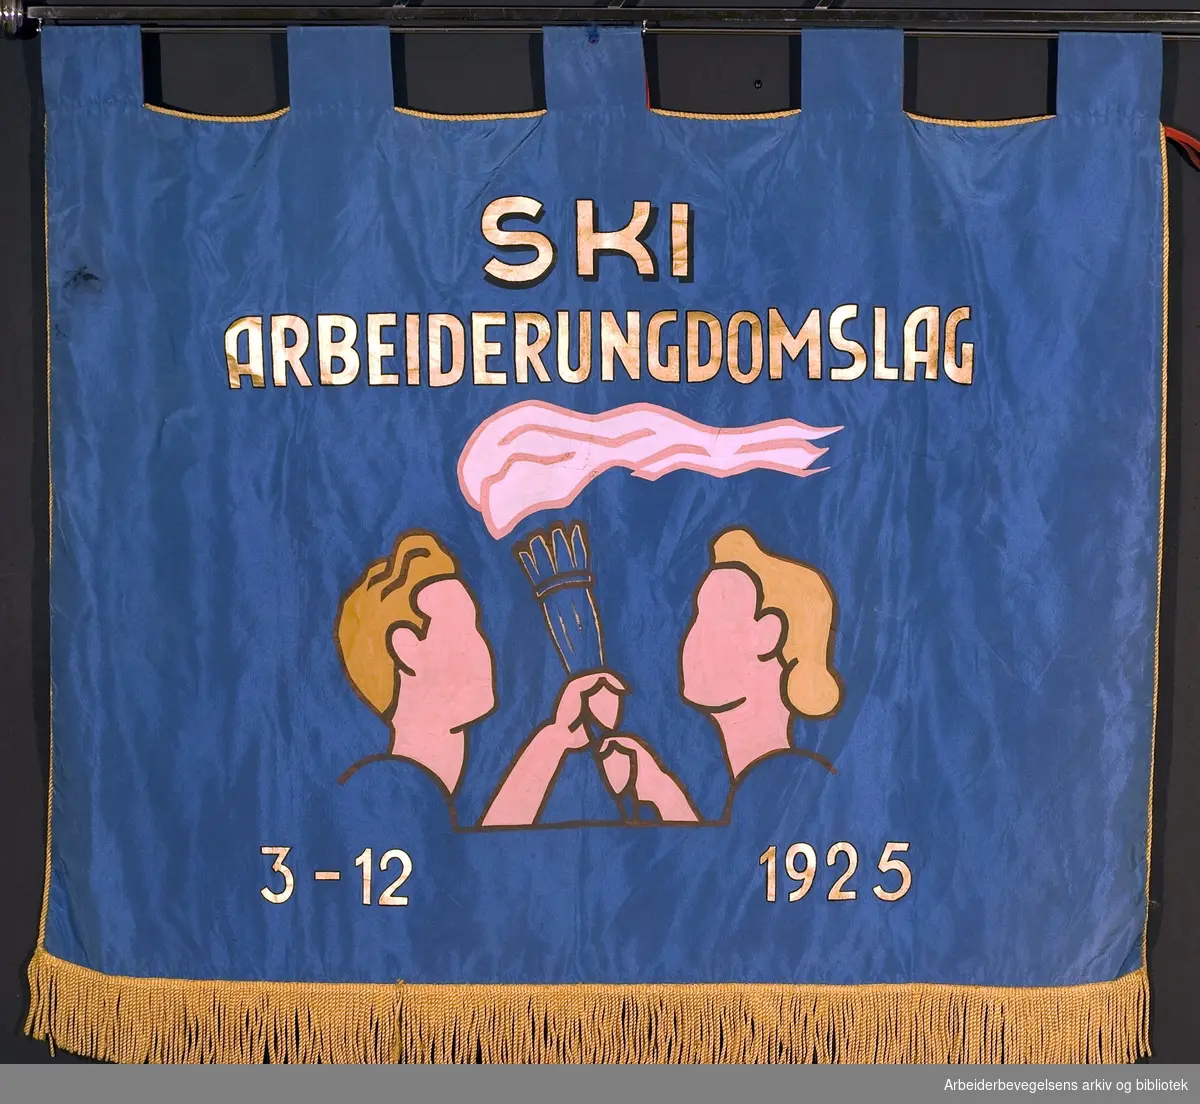 Ski arbeiderungdomslag.Stiftet 3. desember 1925..Bakside..Fanetekst: Ski Arbeiderungdomslag.3 - 12 1925.